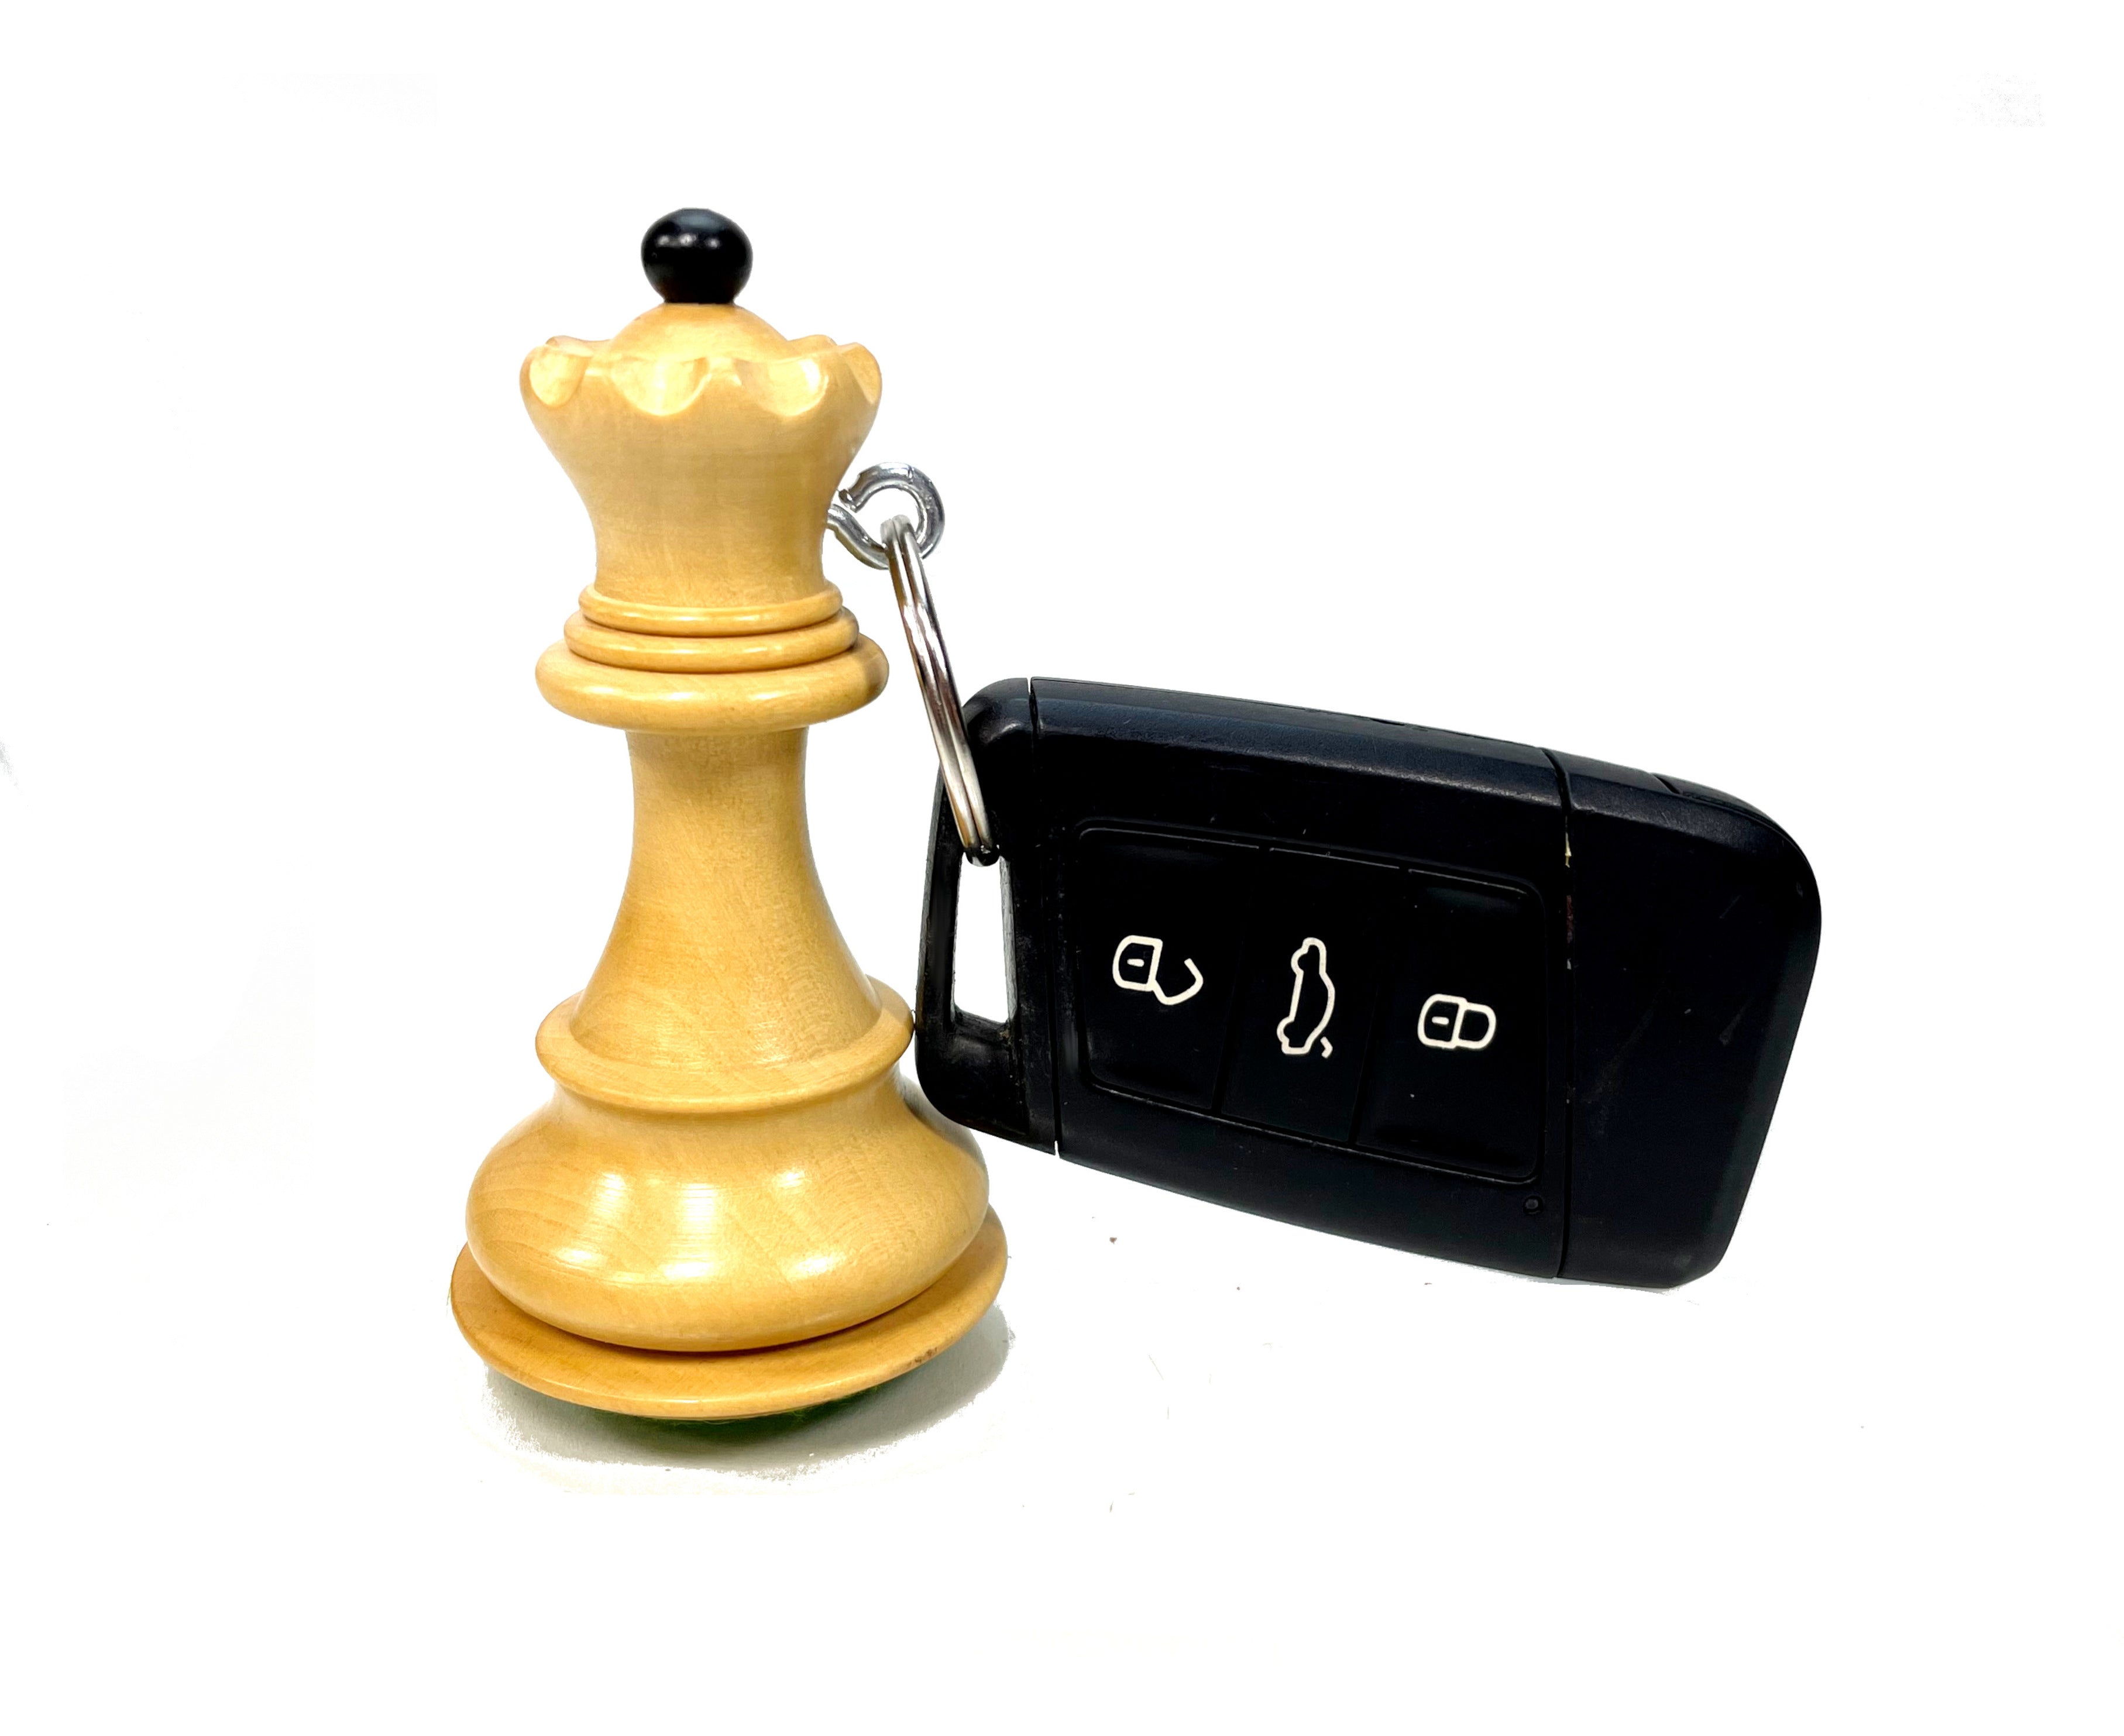 Chaveiro de Xadrez Peão Preto (Peça maciça) #ChessMania